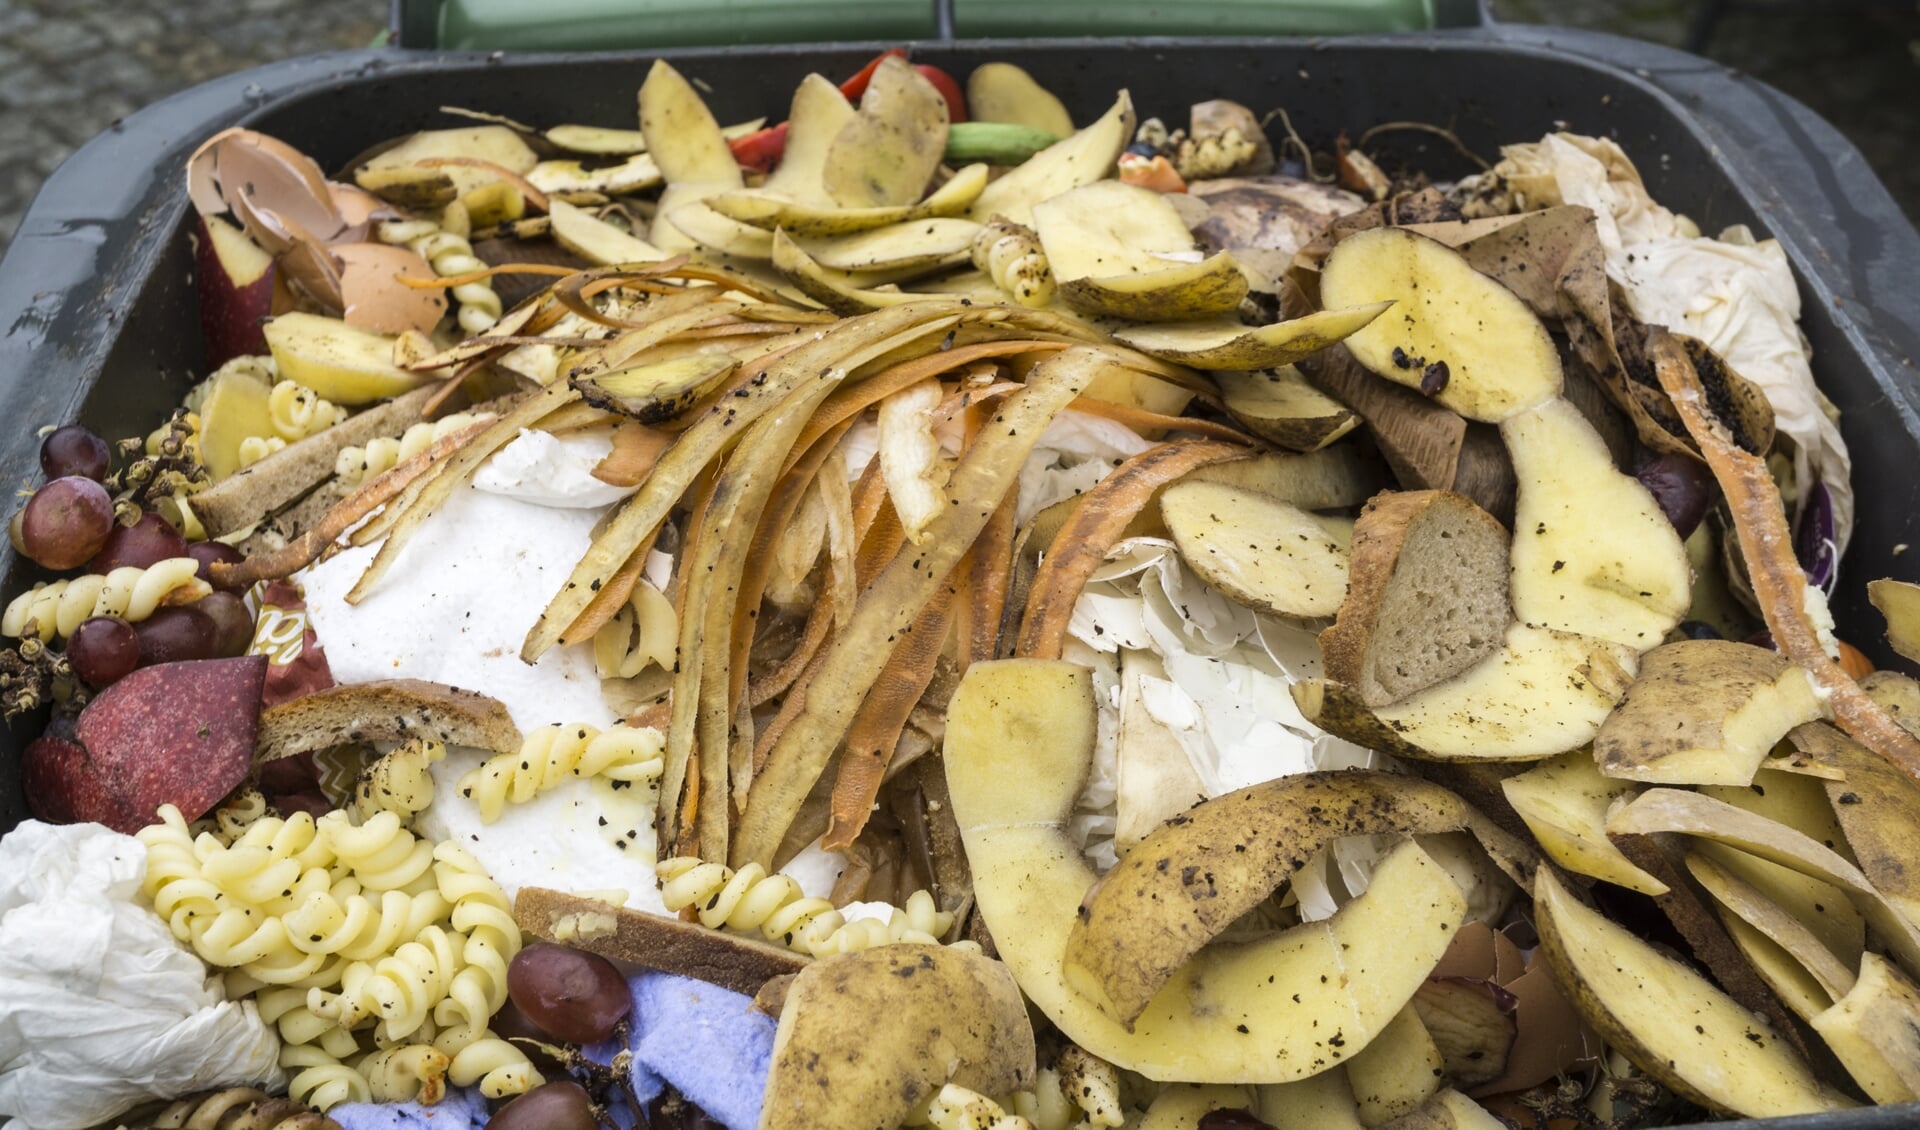 Huishoudens verspillen gemiddeld 41 kilo eten per persoon per jaar aan vast voedsel. Vooral brood, zuivel, groente, fruit en vlees worden weggegooid. 